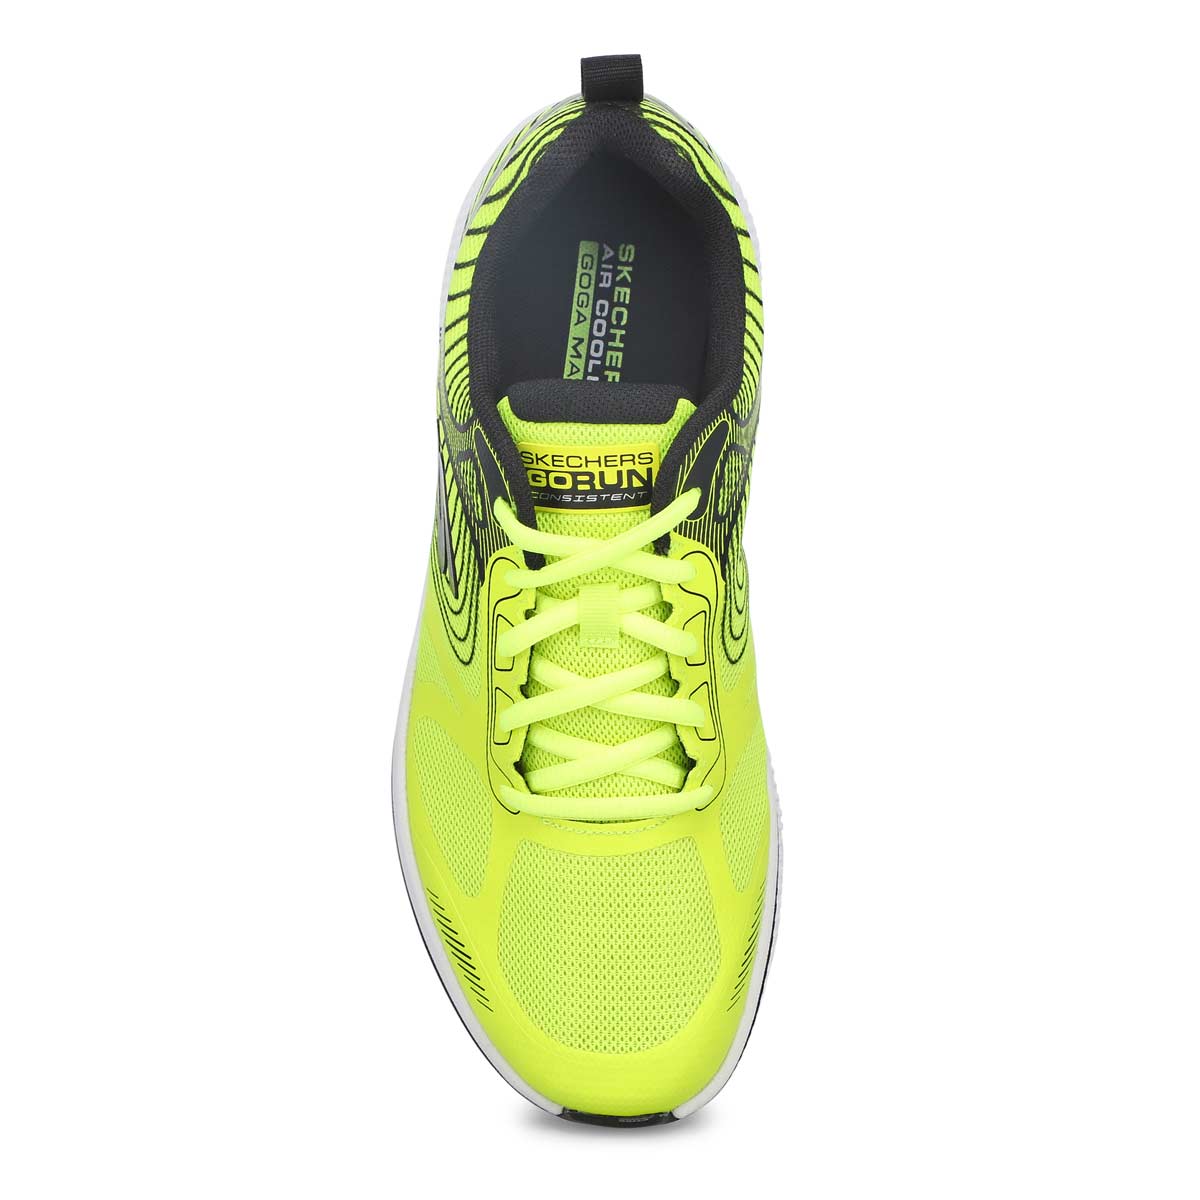 Skechers Men's Go Run Running Shoes - Yellow | SoftMoc.com